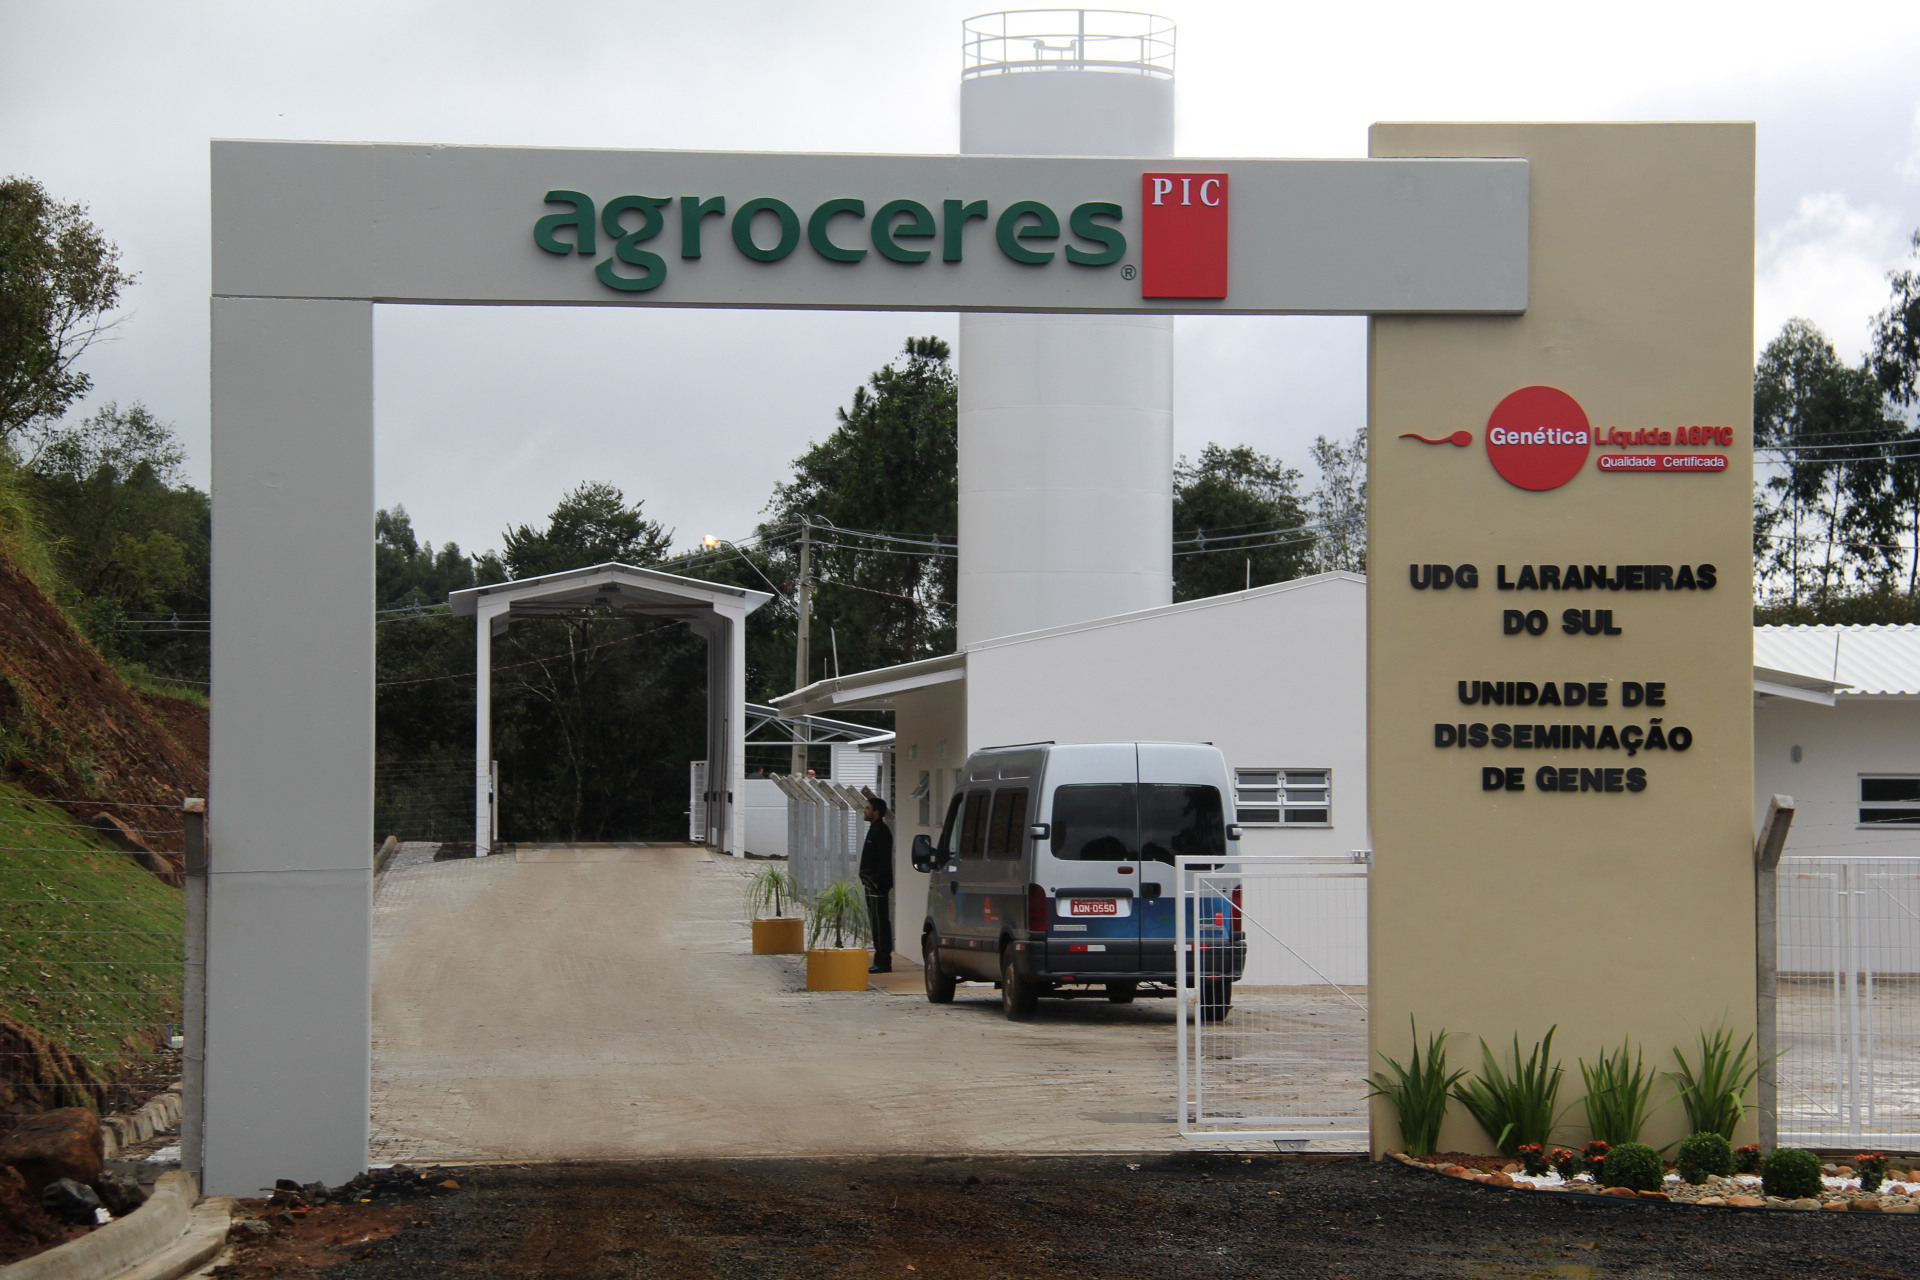 CRESS Sergipe tem 345 DIPS disponíveis para retirada na sede